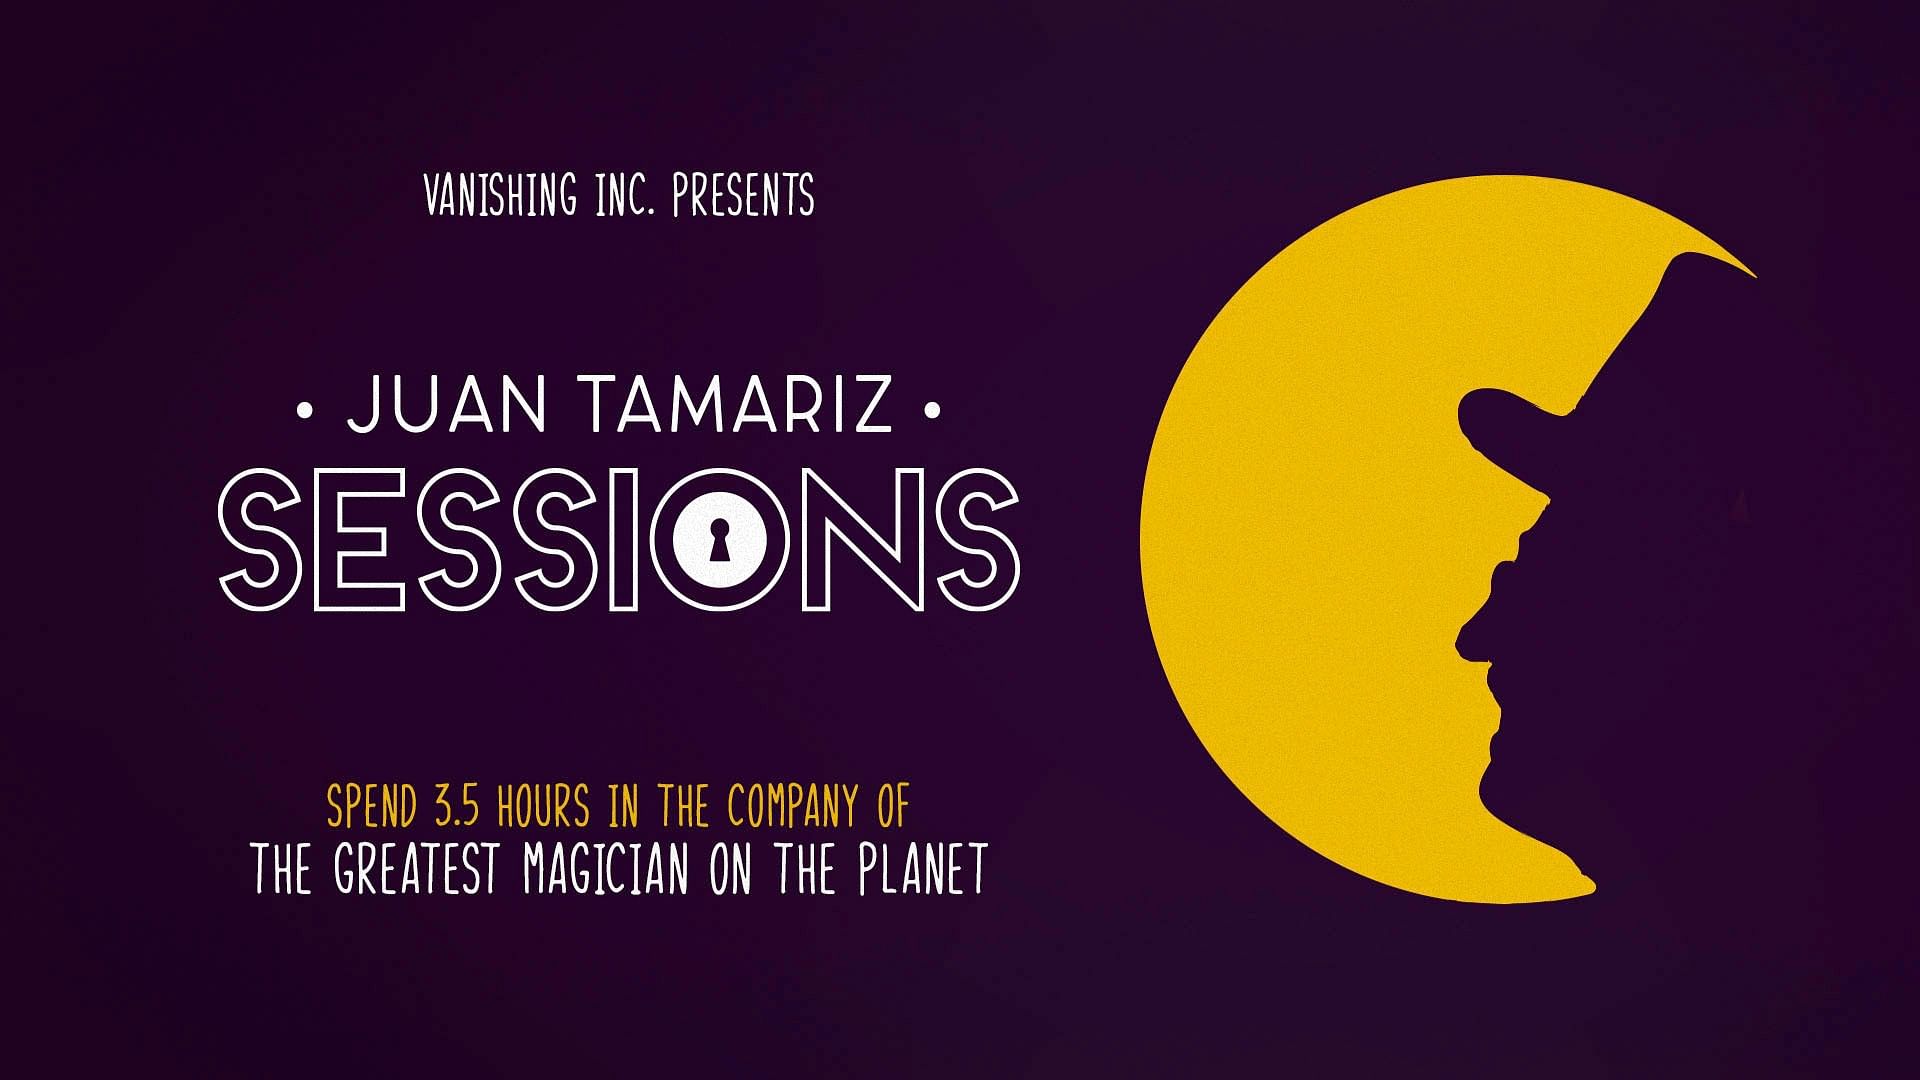 Vanishing Inc. Sessions: Juan Tamariz - Vanishing Inc. Magic shop